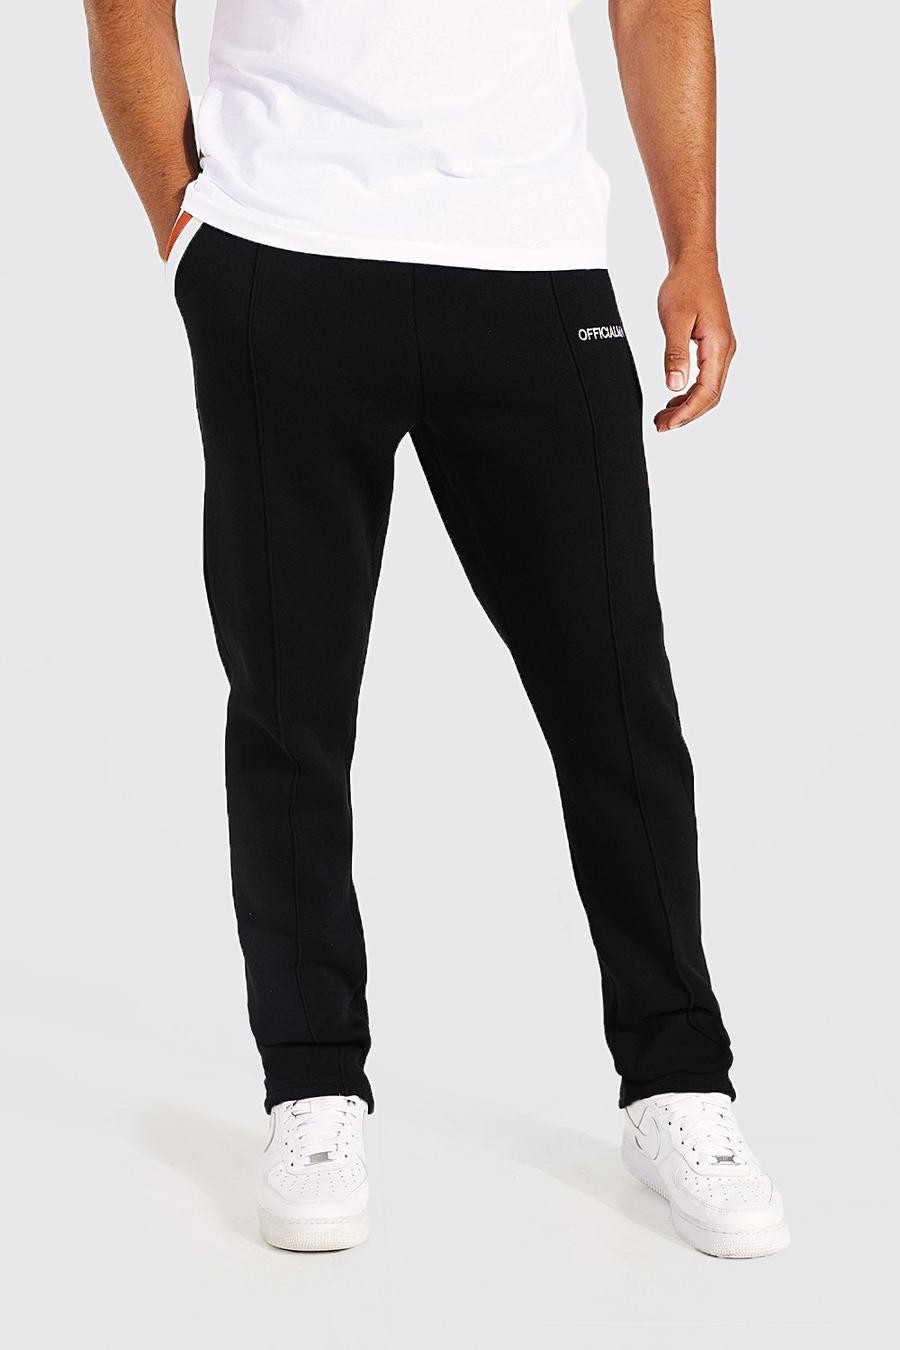 Pantalón deportivo Tall ajustado con alforza y cinta en los bolsillos, Black negro image number 1